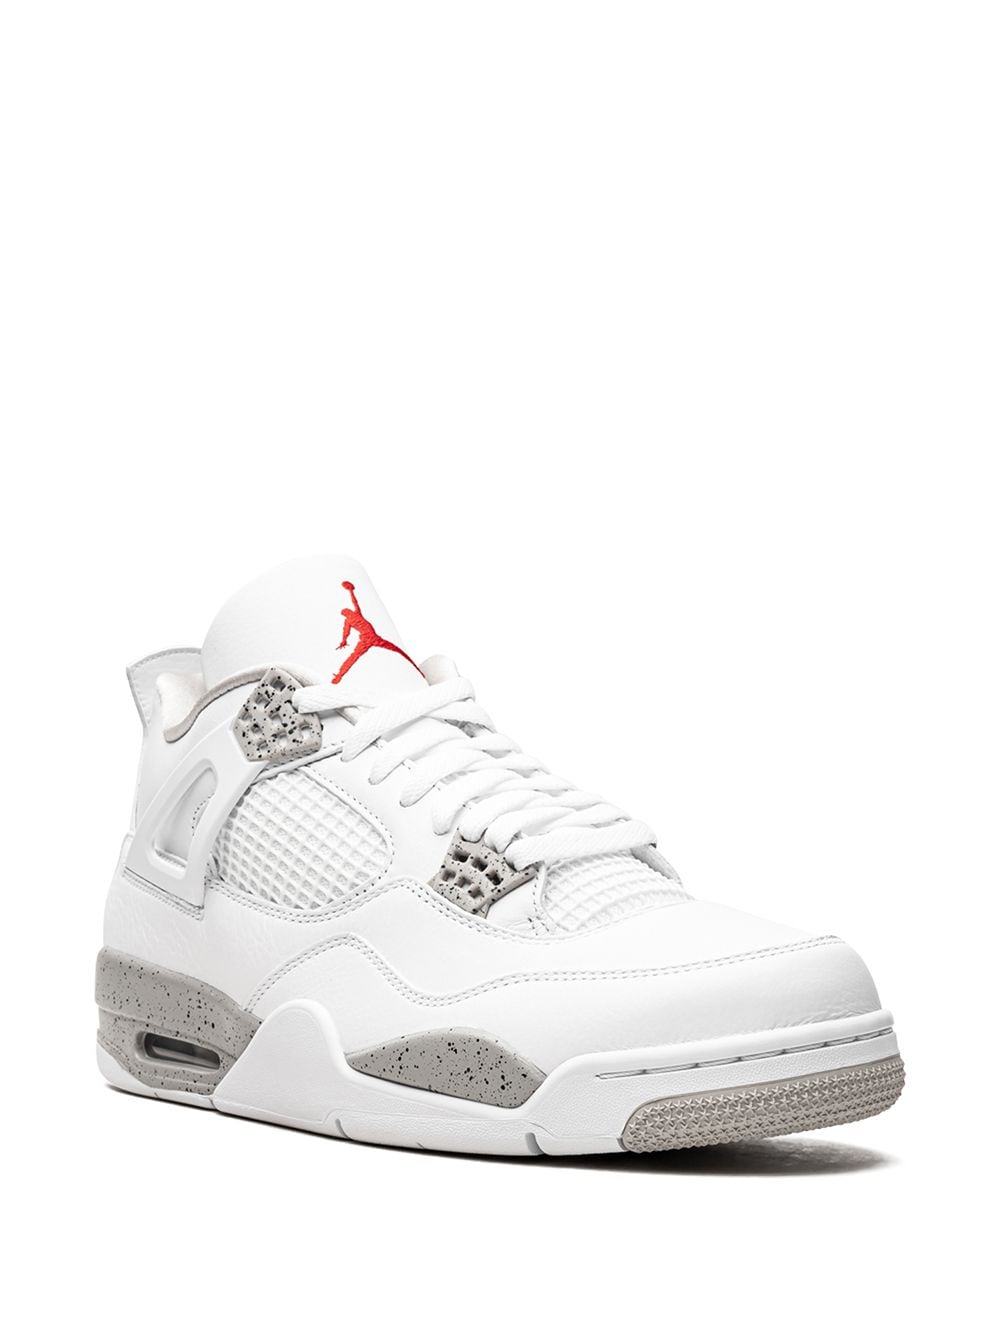 Nike Jordan Retro 4 "White Oreo"